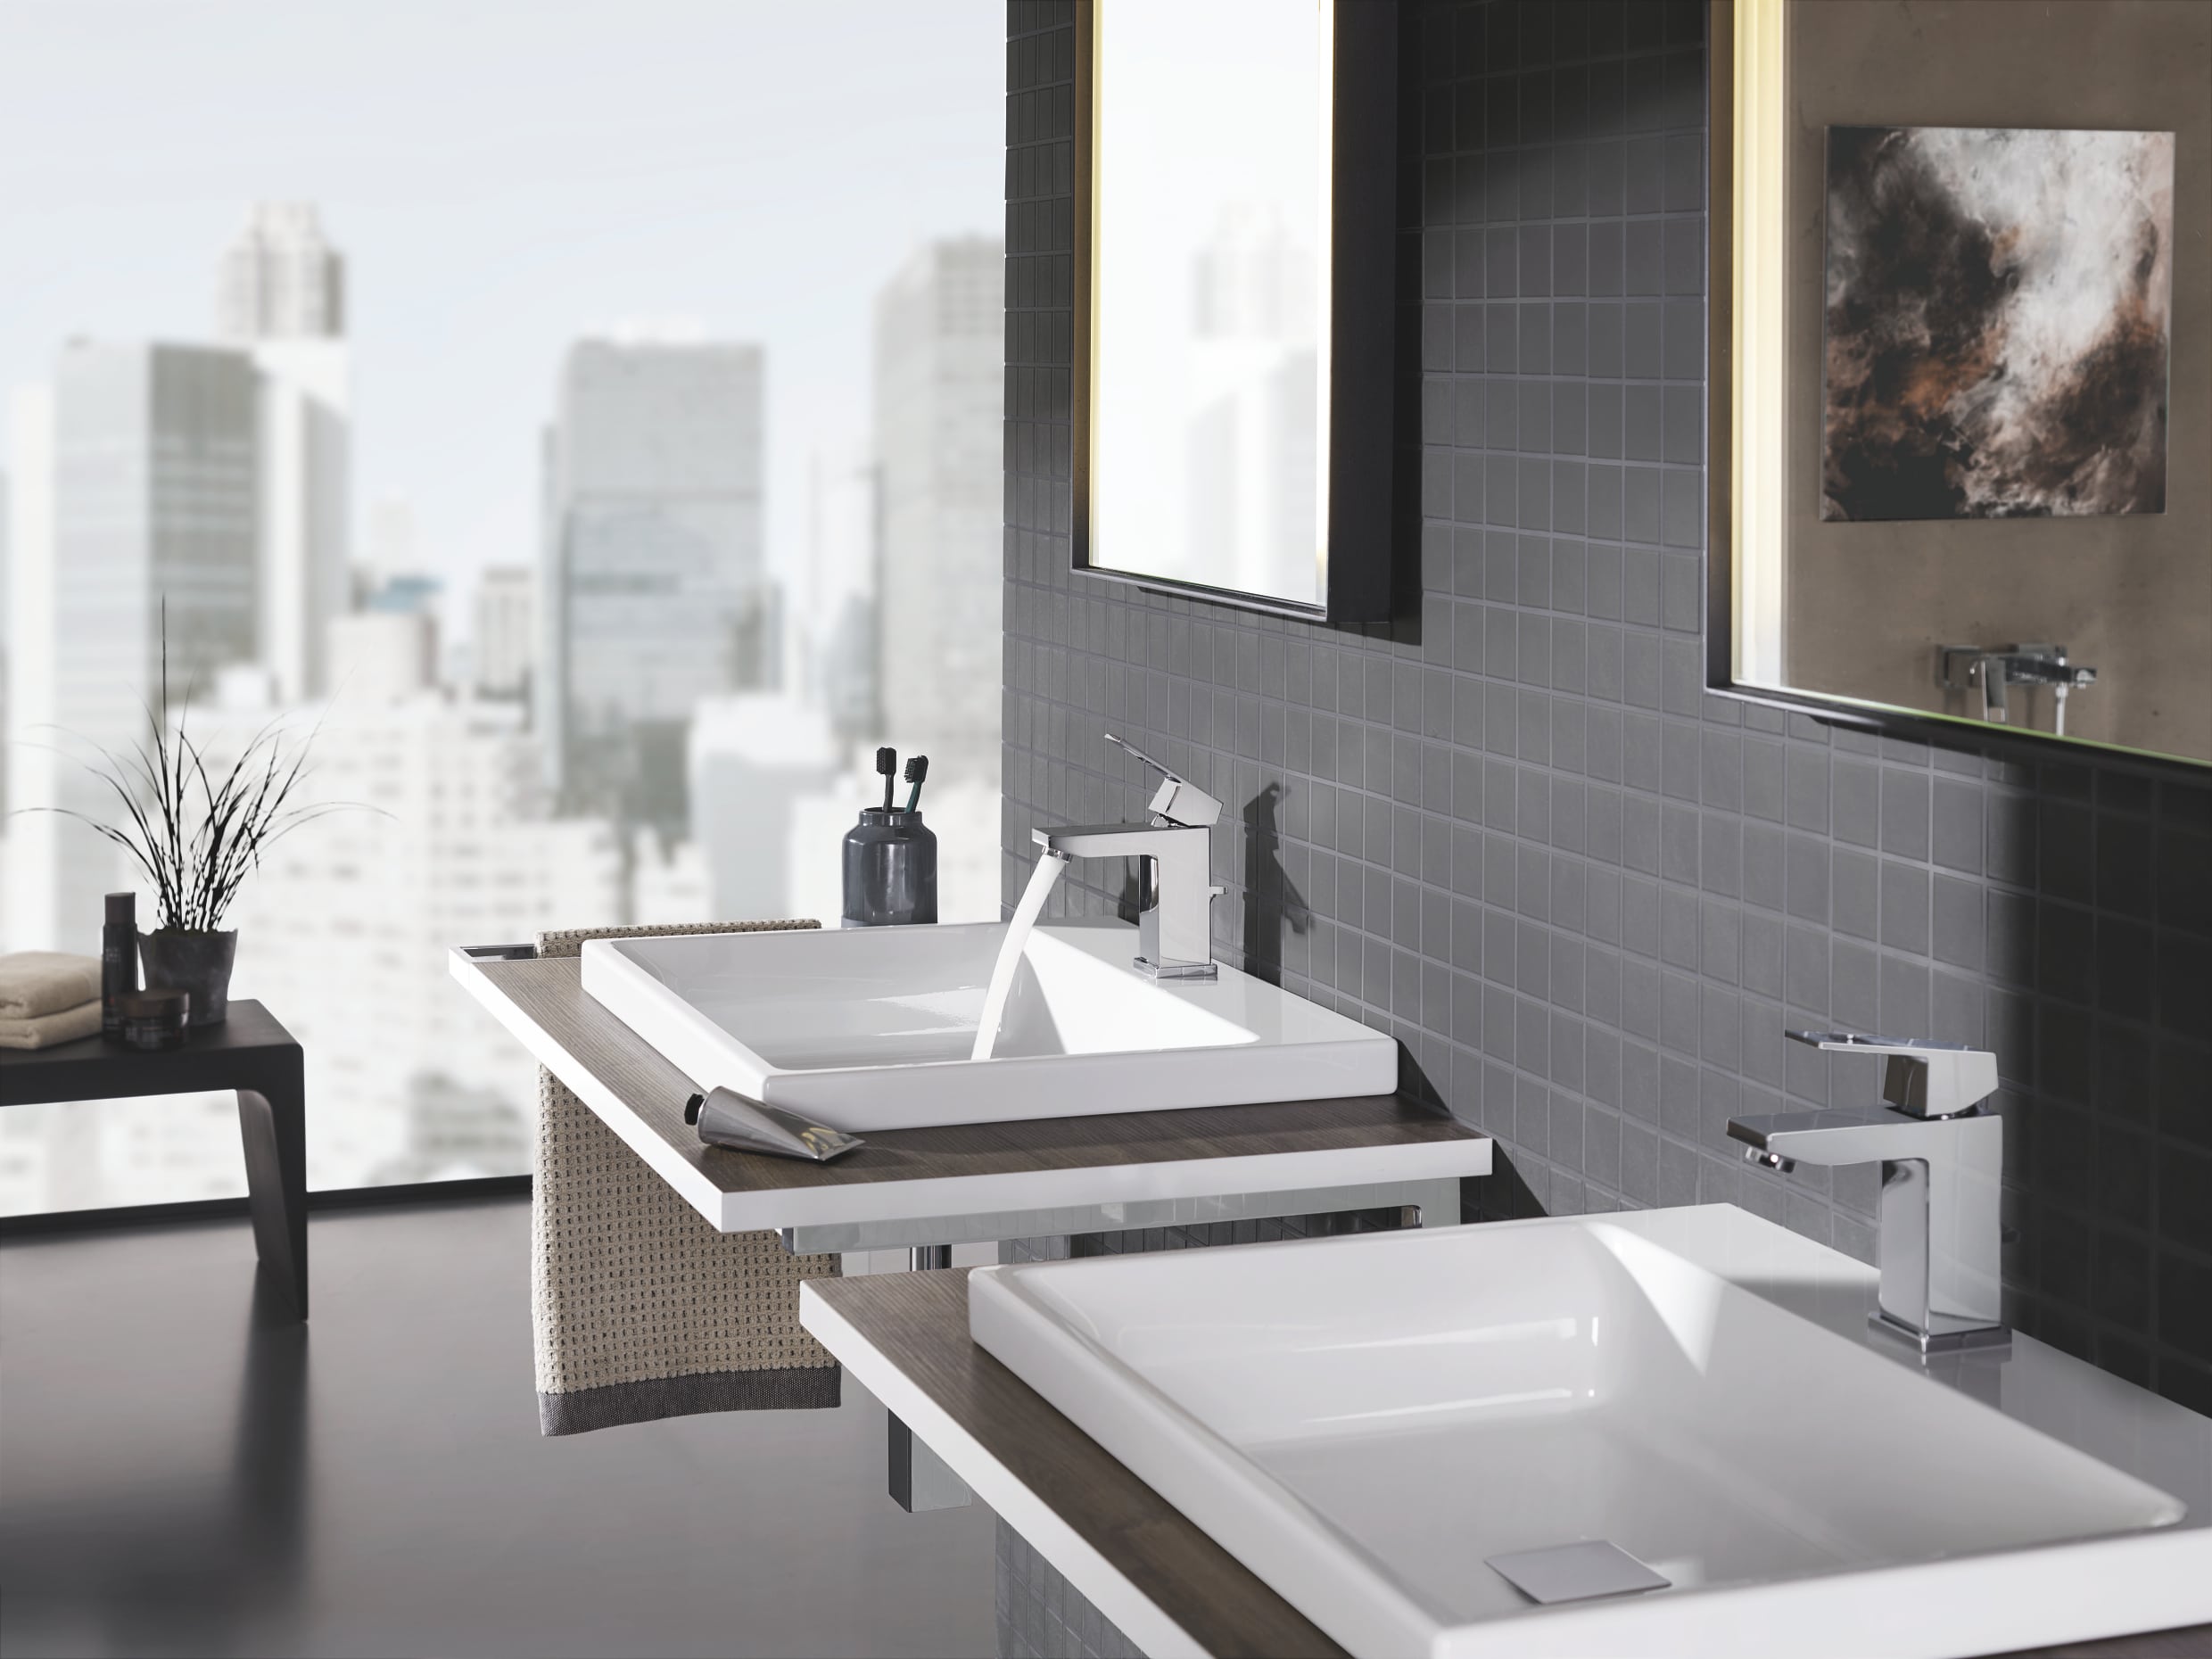 Badezimmer mit Doppelwaschtisch mit aufgesetzten Cube Keramik Waschbecken und Eurocube Armaturen von Grohe.